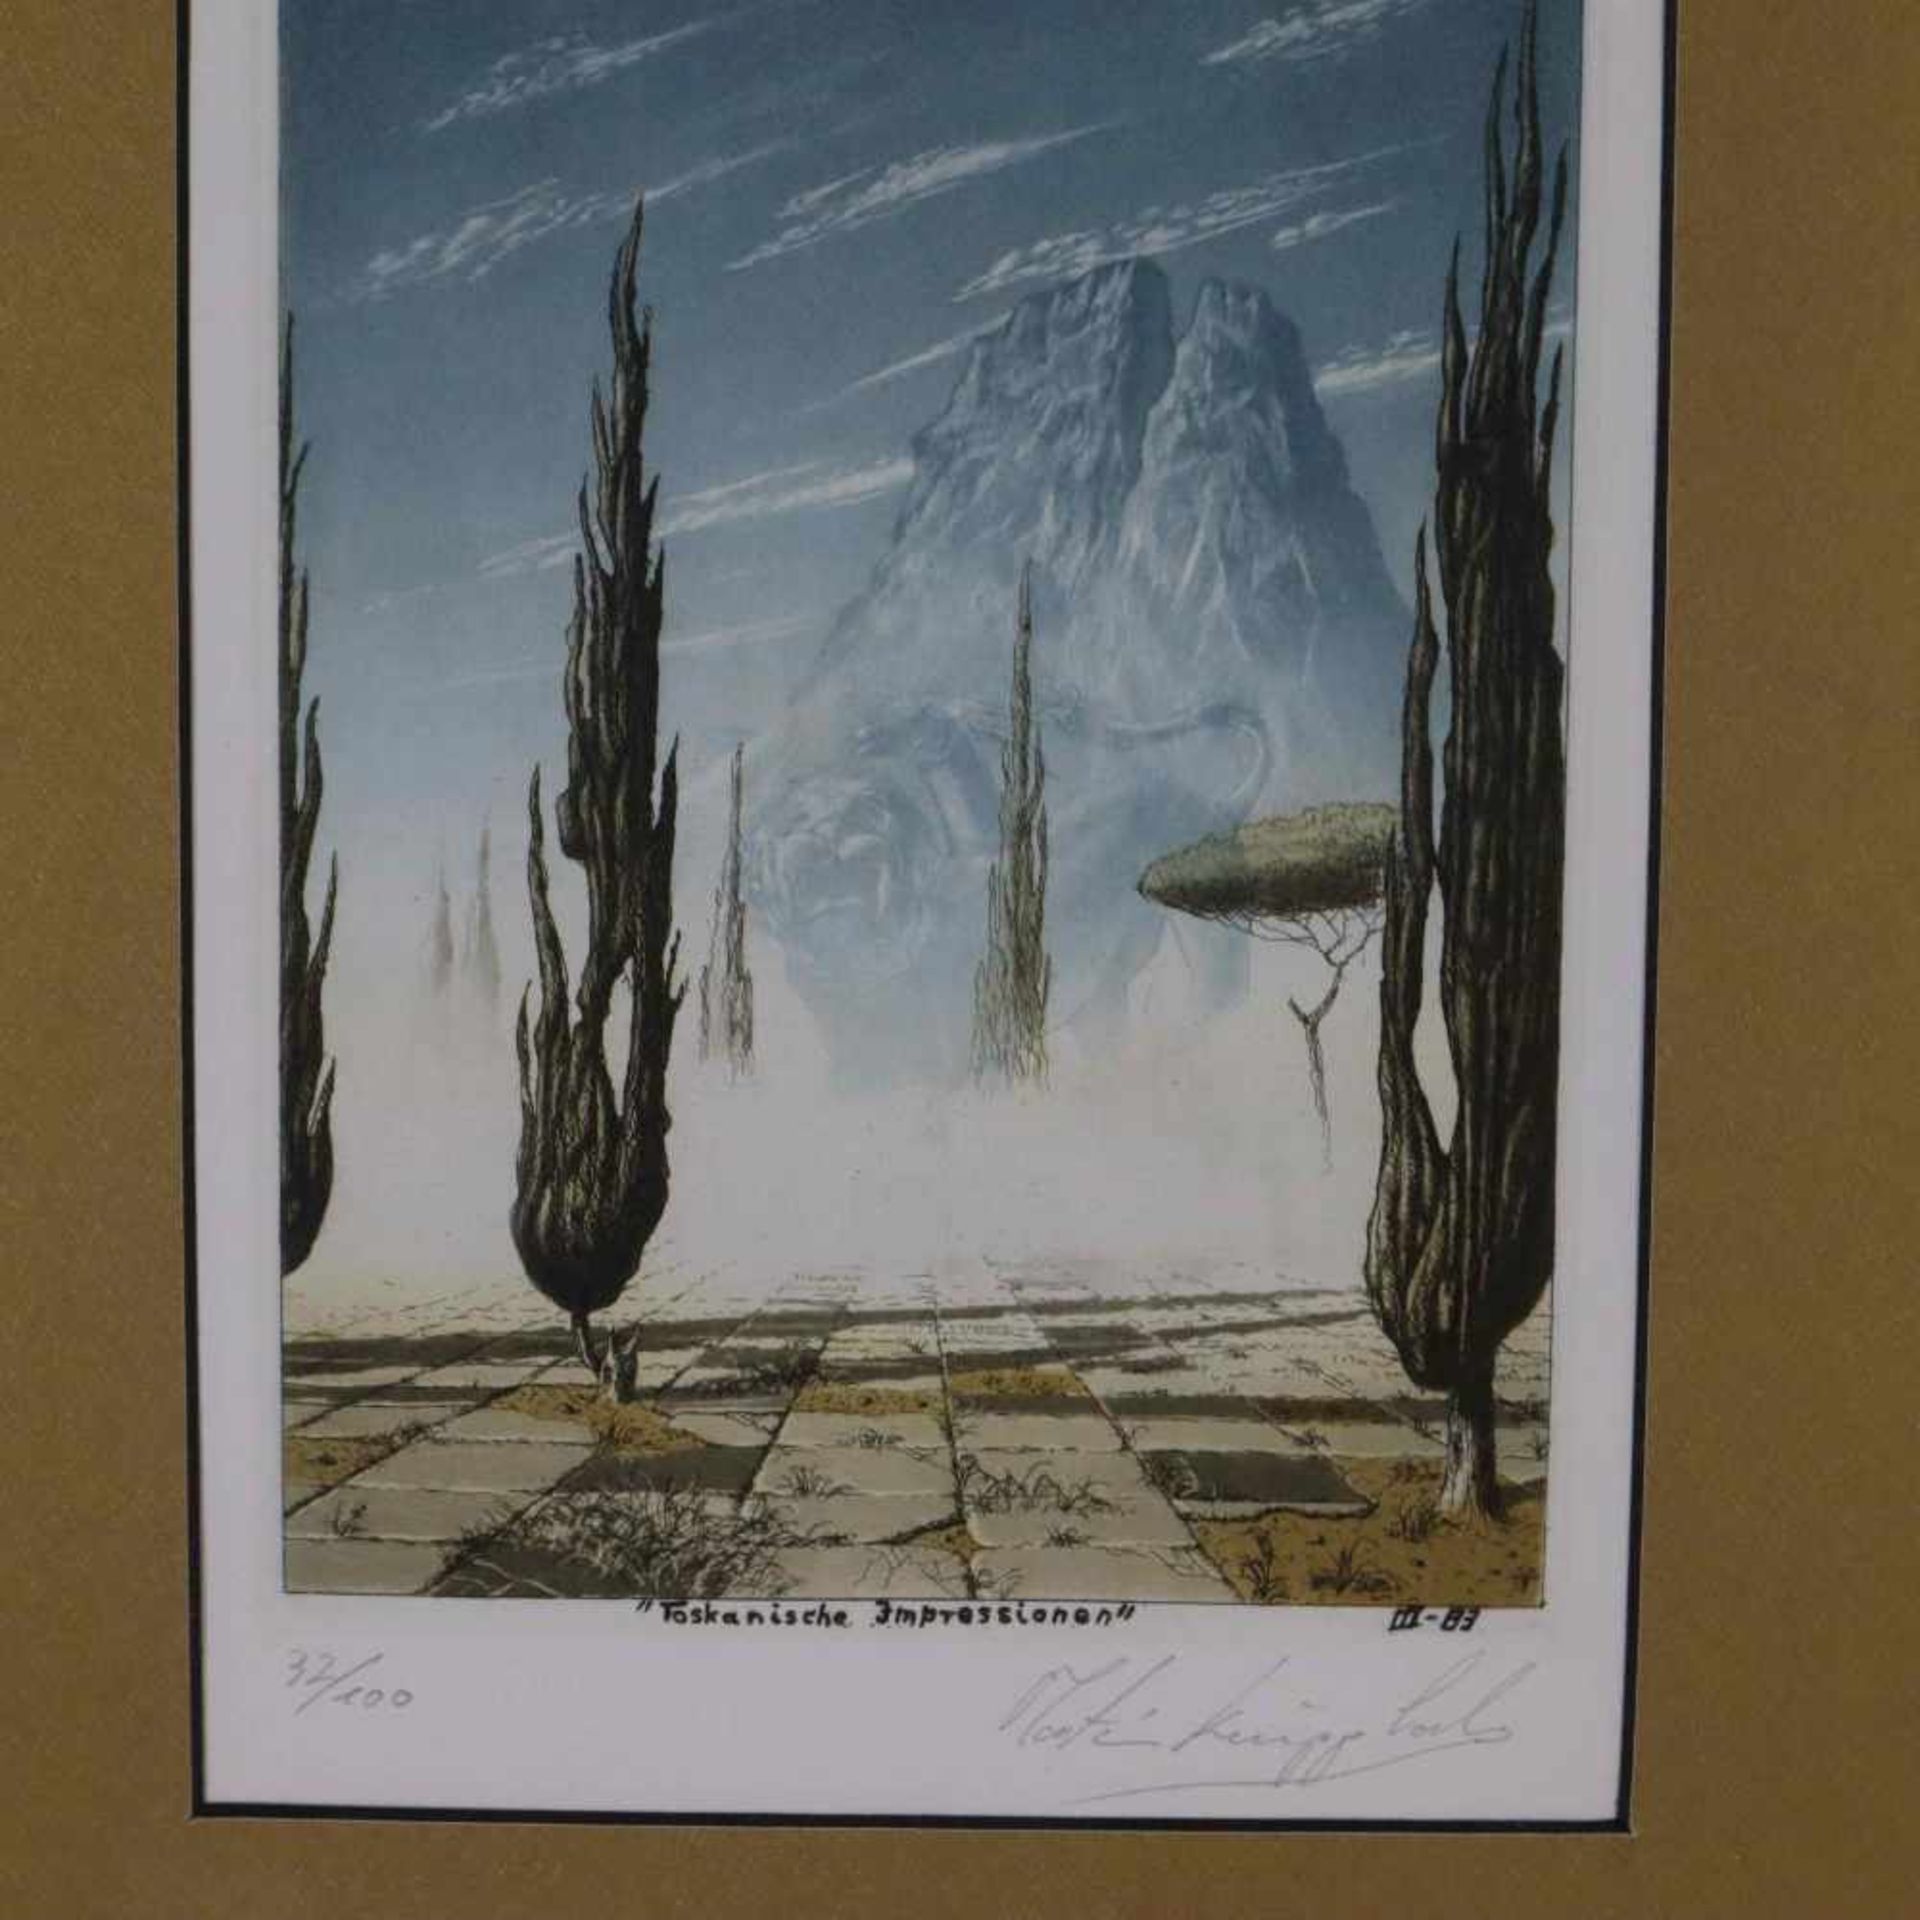 Knipphals, Martin (geb.1950 Kiel) - "Toskanische Impressionen", Farbradierung, in der Platte - Bild 2 aus 5